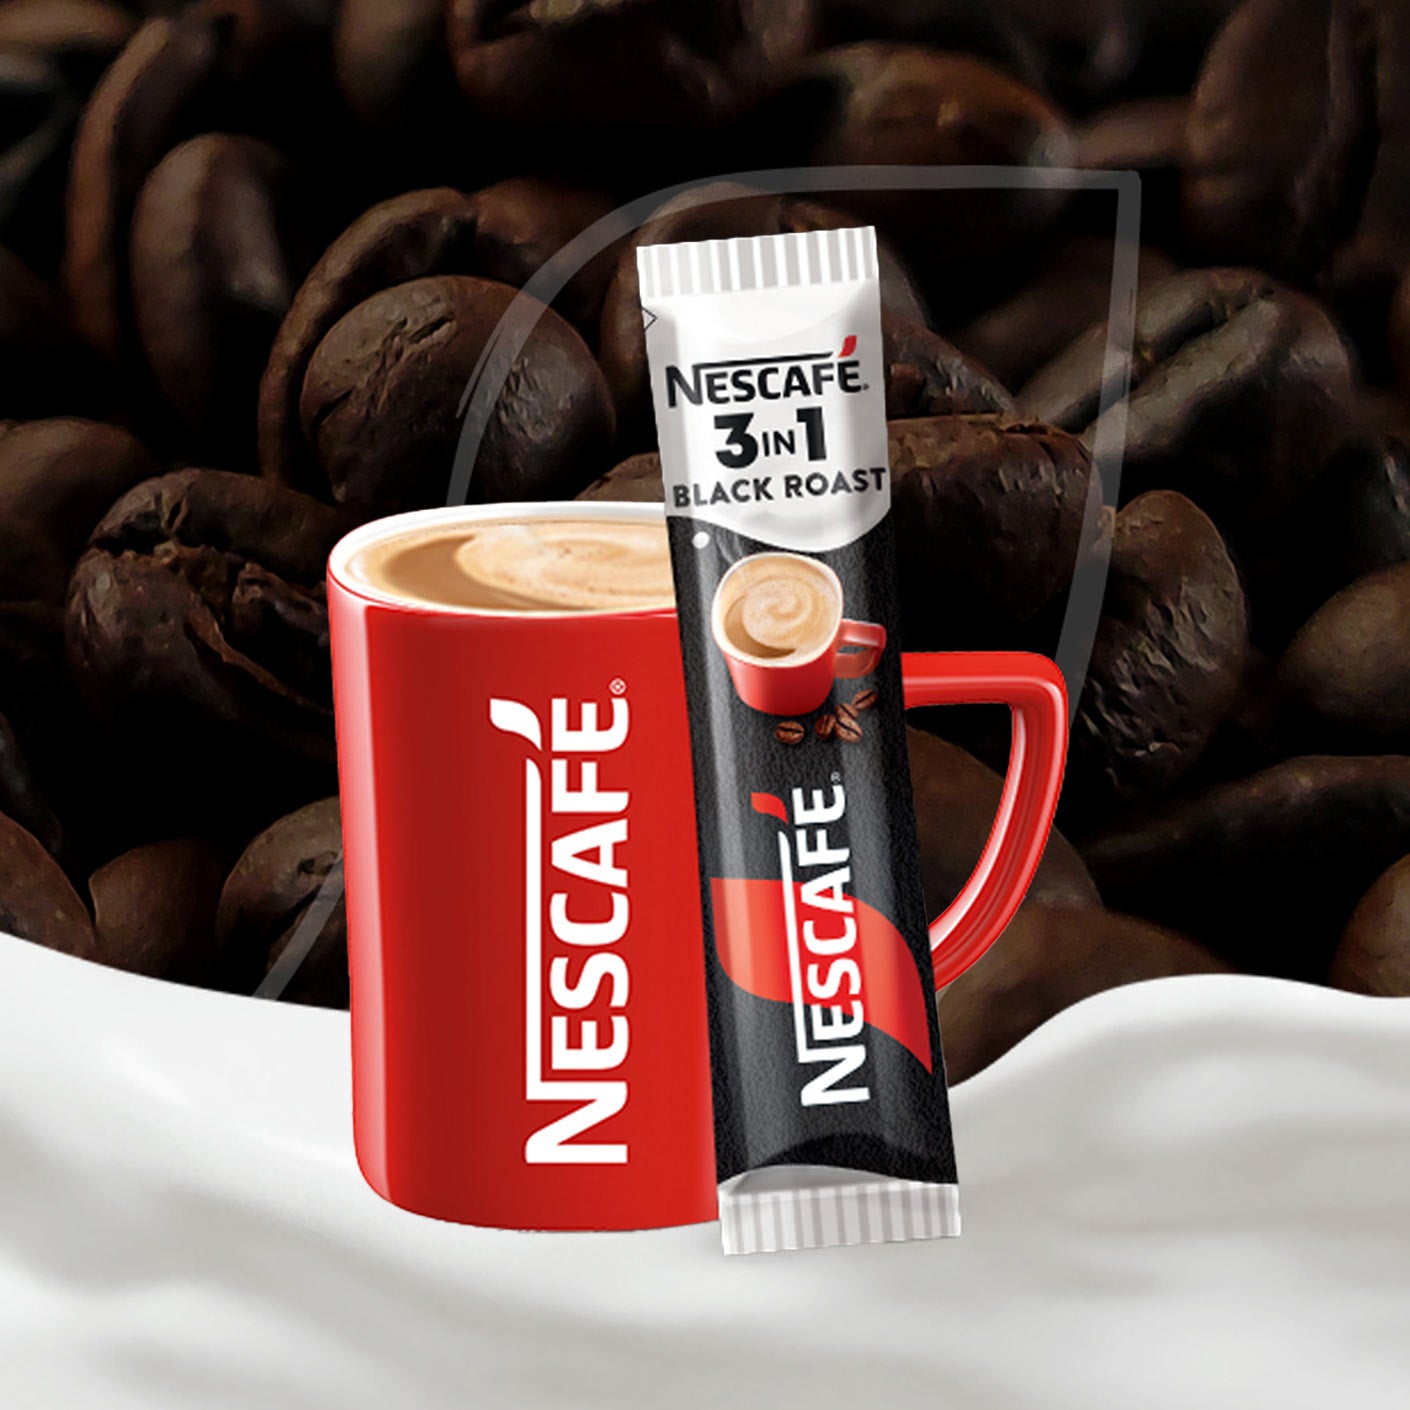 Plic NESCAFE Black Roast 3in1 si cana cu boabe de cafea si lapte